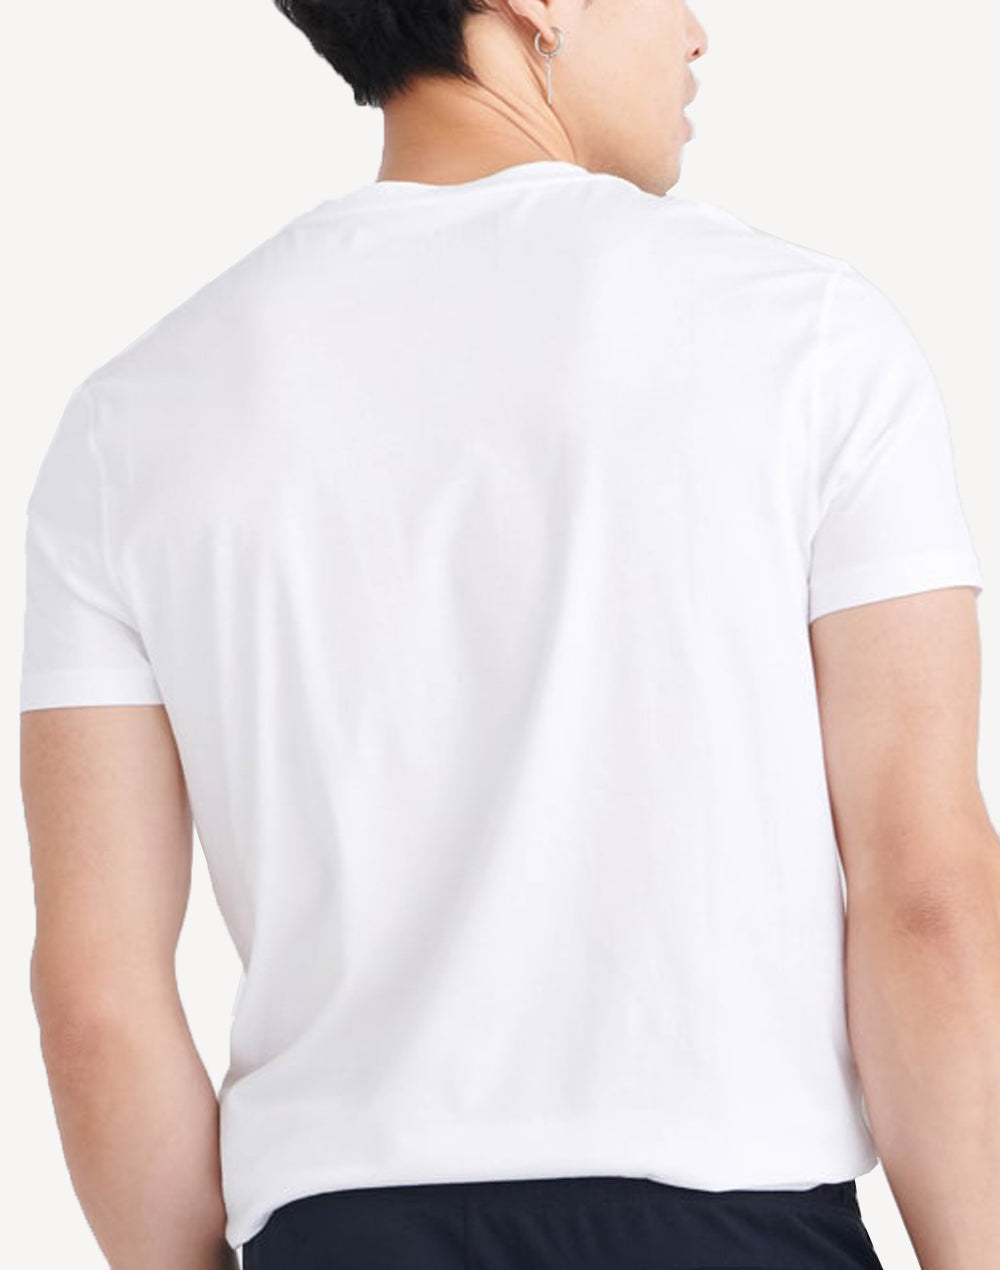 Droptemp Cooling Cotton Crew T-Shirt#color_white